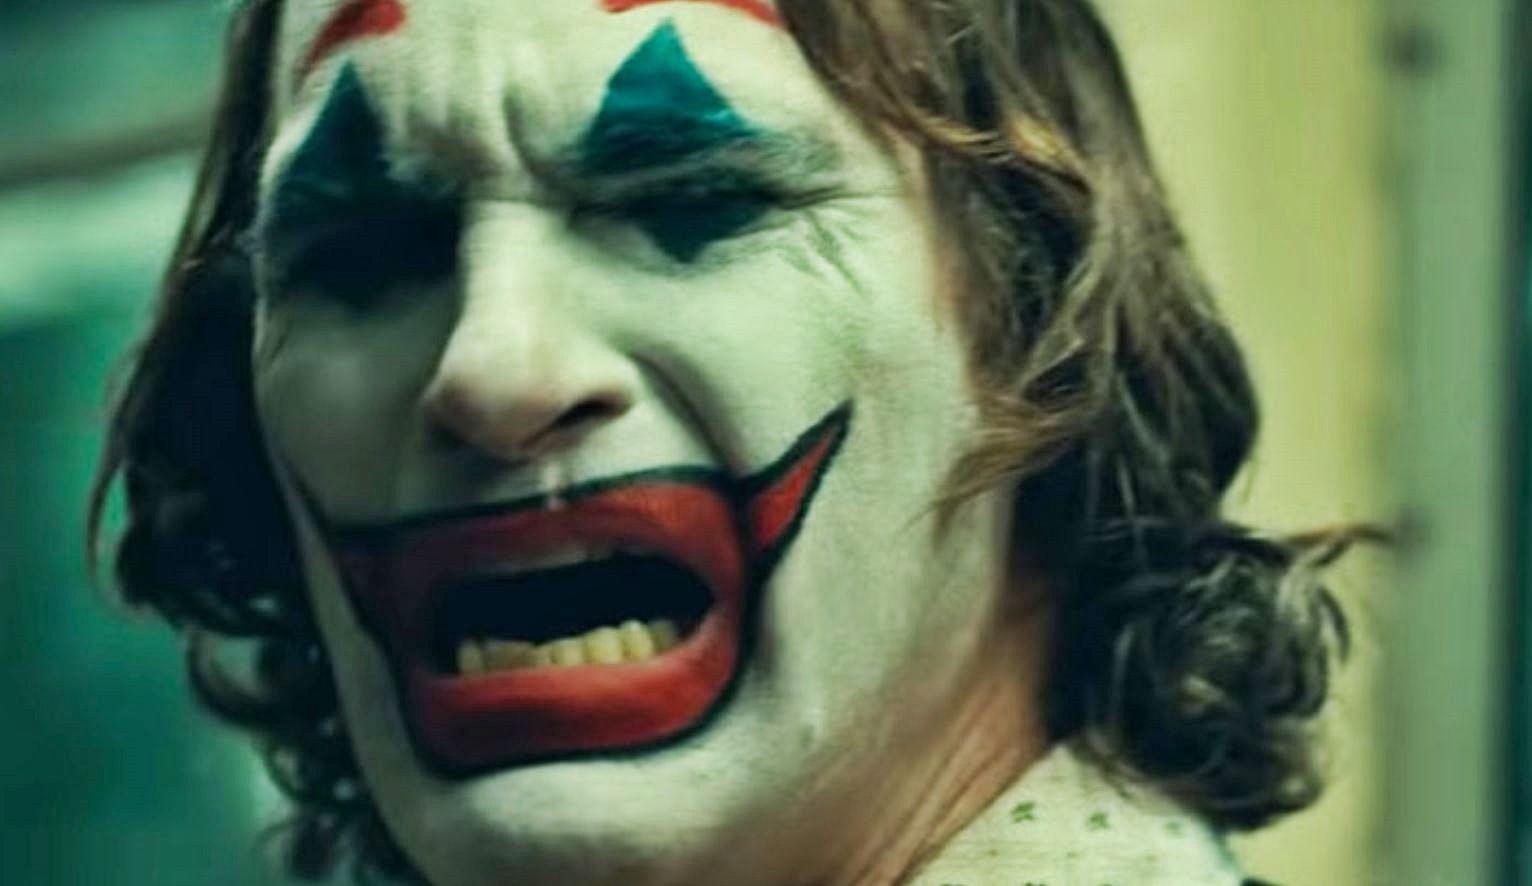 瓦昆菲尼克斯主演的《小丑》獨立電影因為性內容和暴力尺度而被評為 R 級！